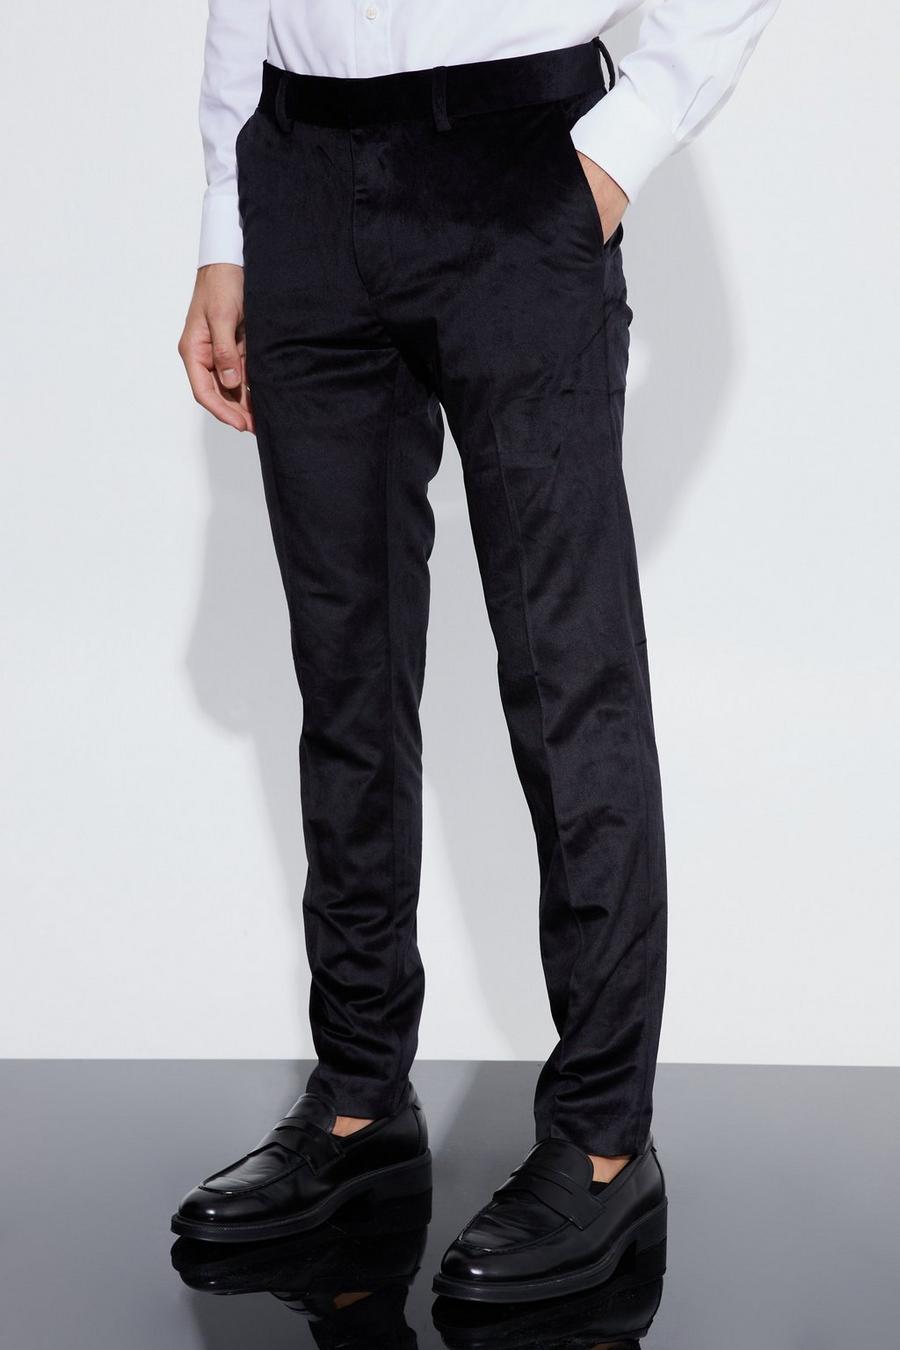 Pantaloni completo Skinny Fit in velours, Black nero